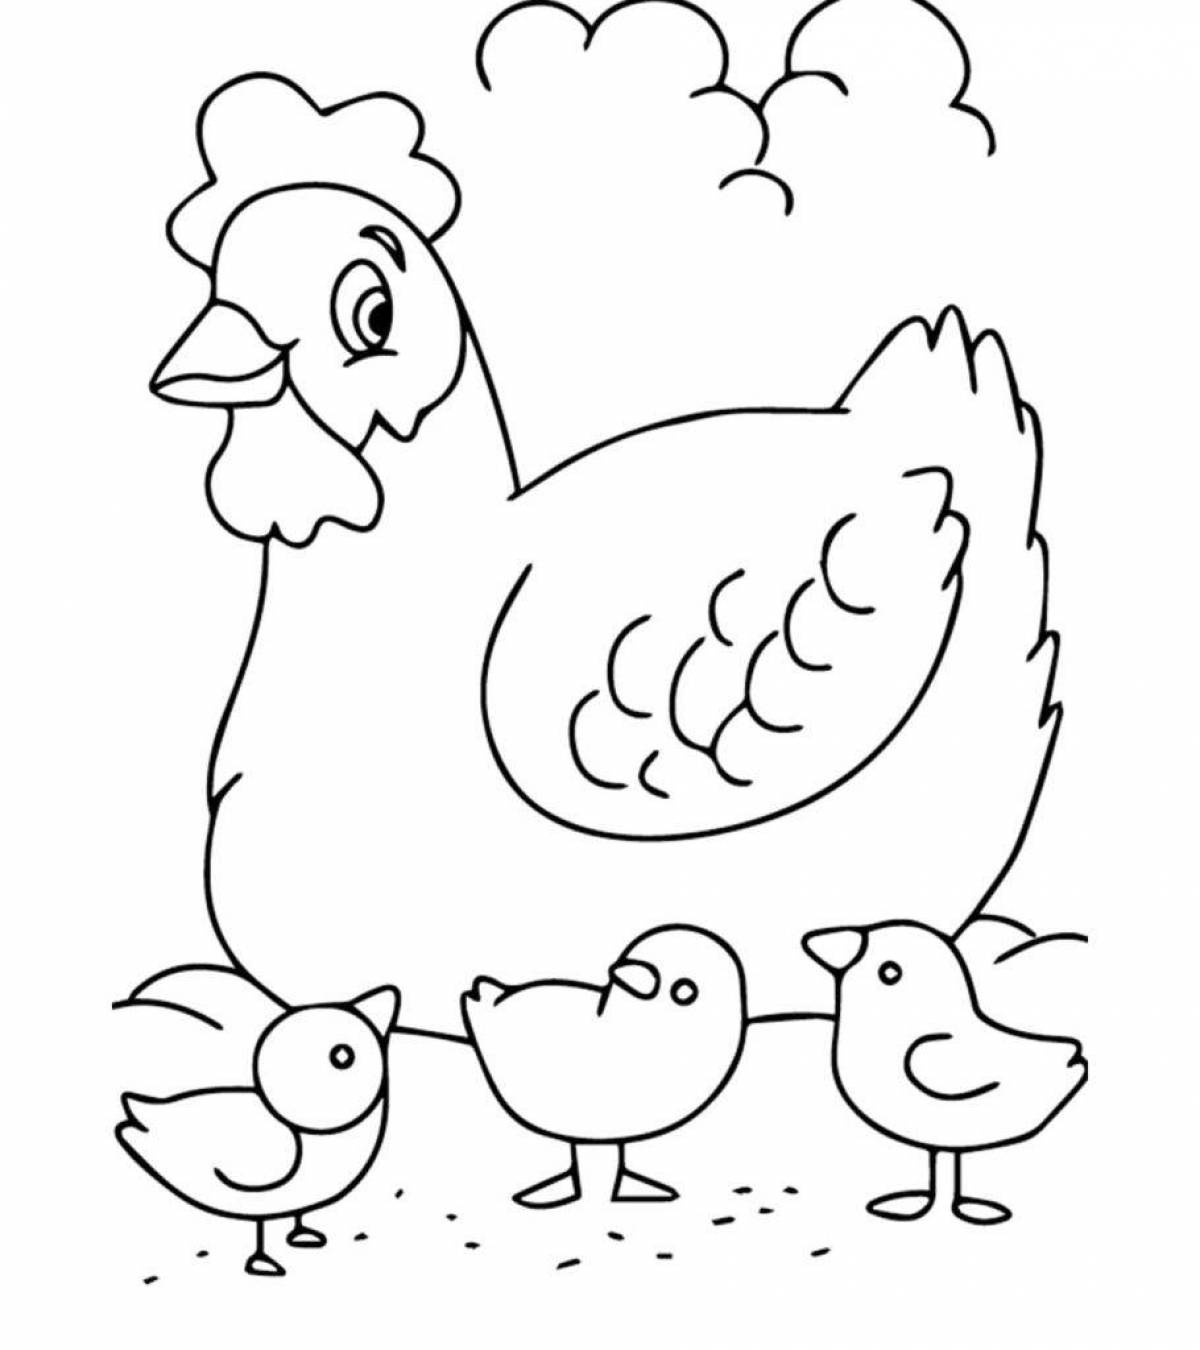 Причудливая раскраска цыпленка для детей